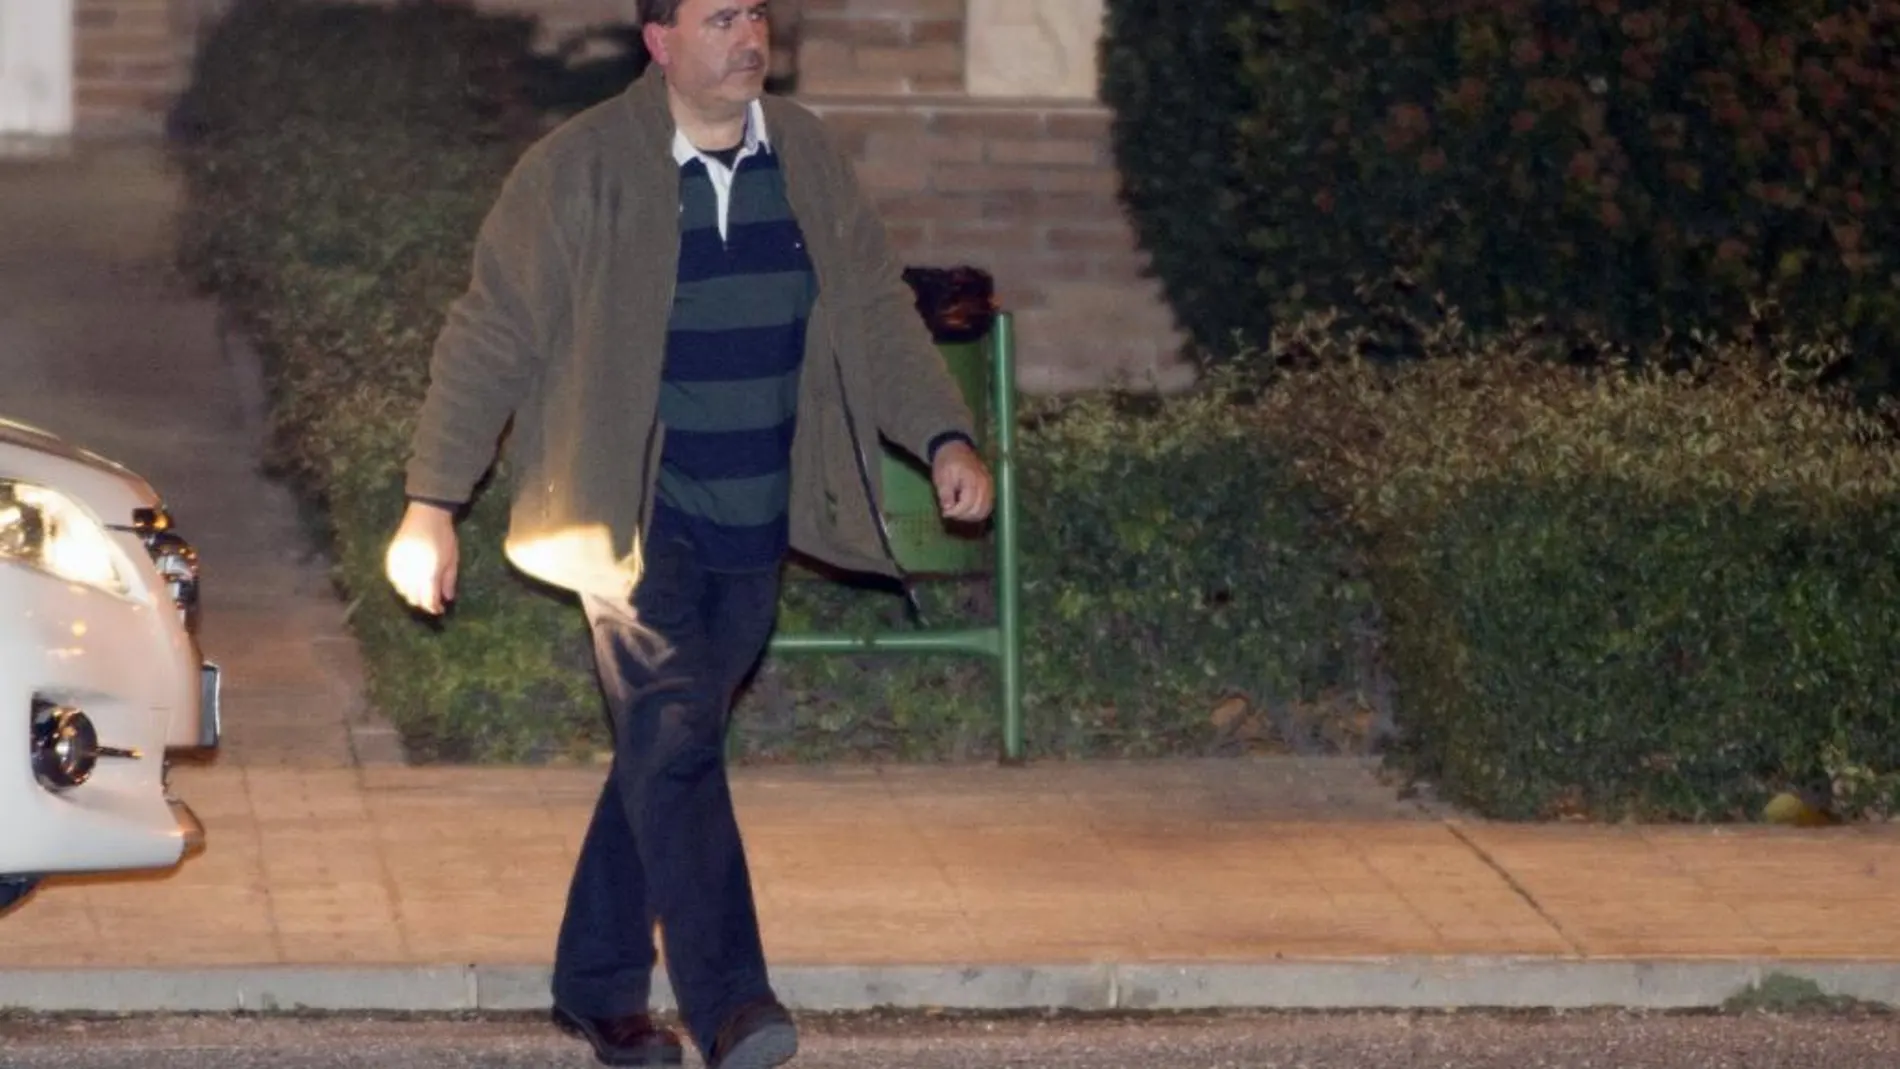 David Marjaliza, socio del exconsejero madrileño Francisco Granados en la trama Púnica, a su salida de la cárcel de Aranjuez (Madrid) tras pasar 14 meses en prisión